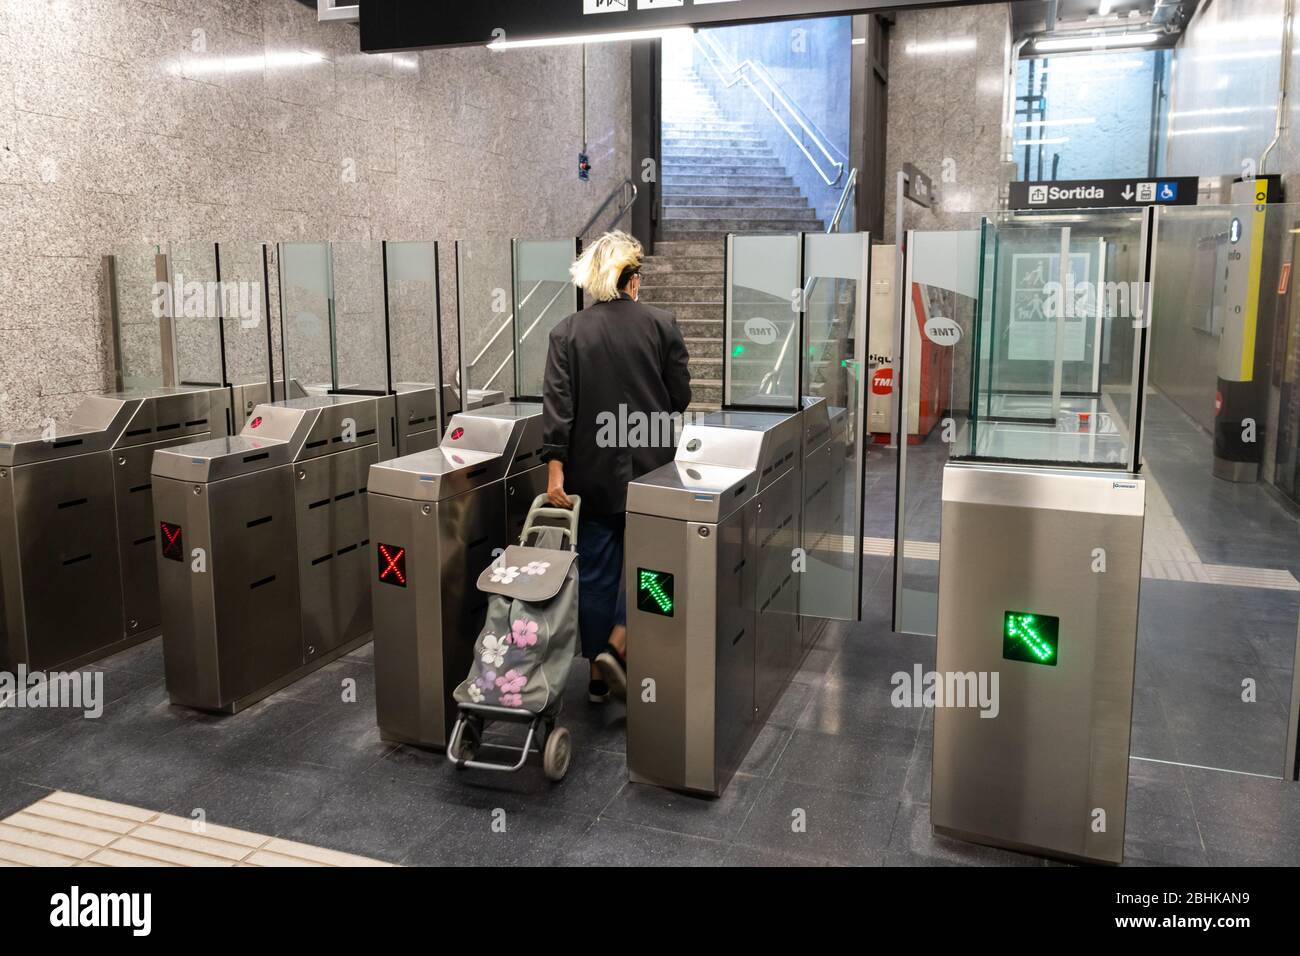 Barcelone, Espagne. 26 avril 2020. Passager quittant une station de métro vide à Barcelone pendant le verrouillage du coronavirus Banque D'Images